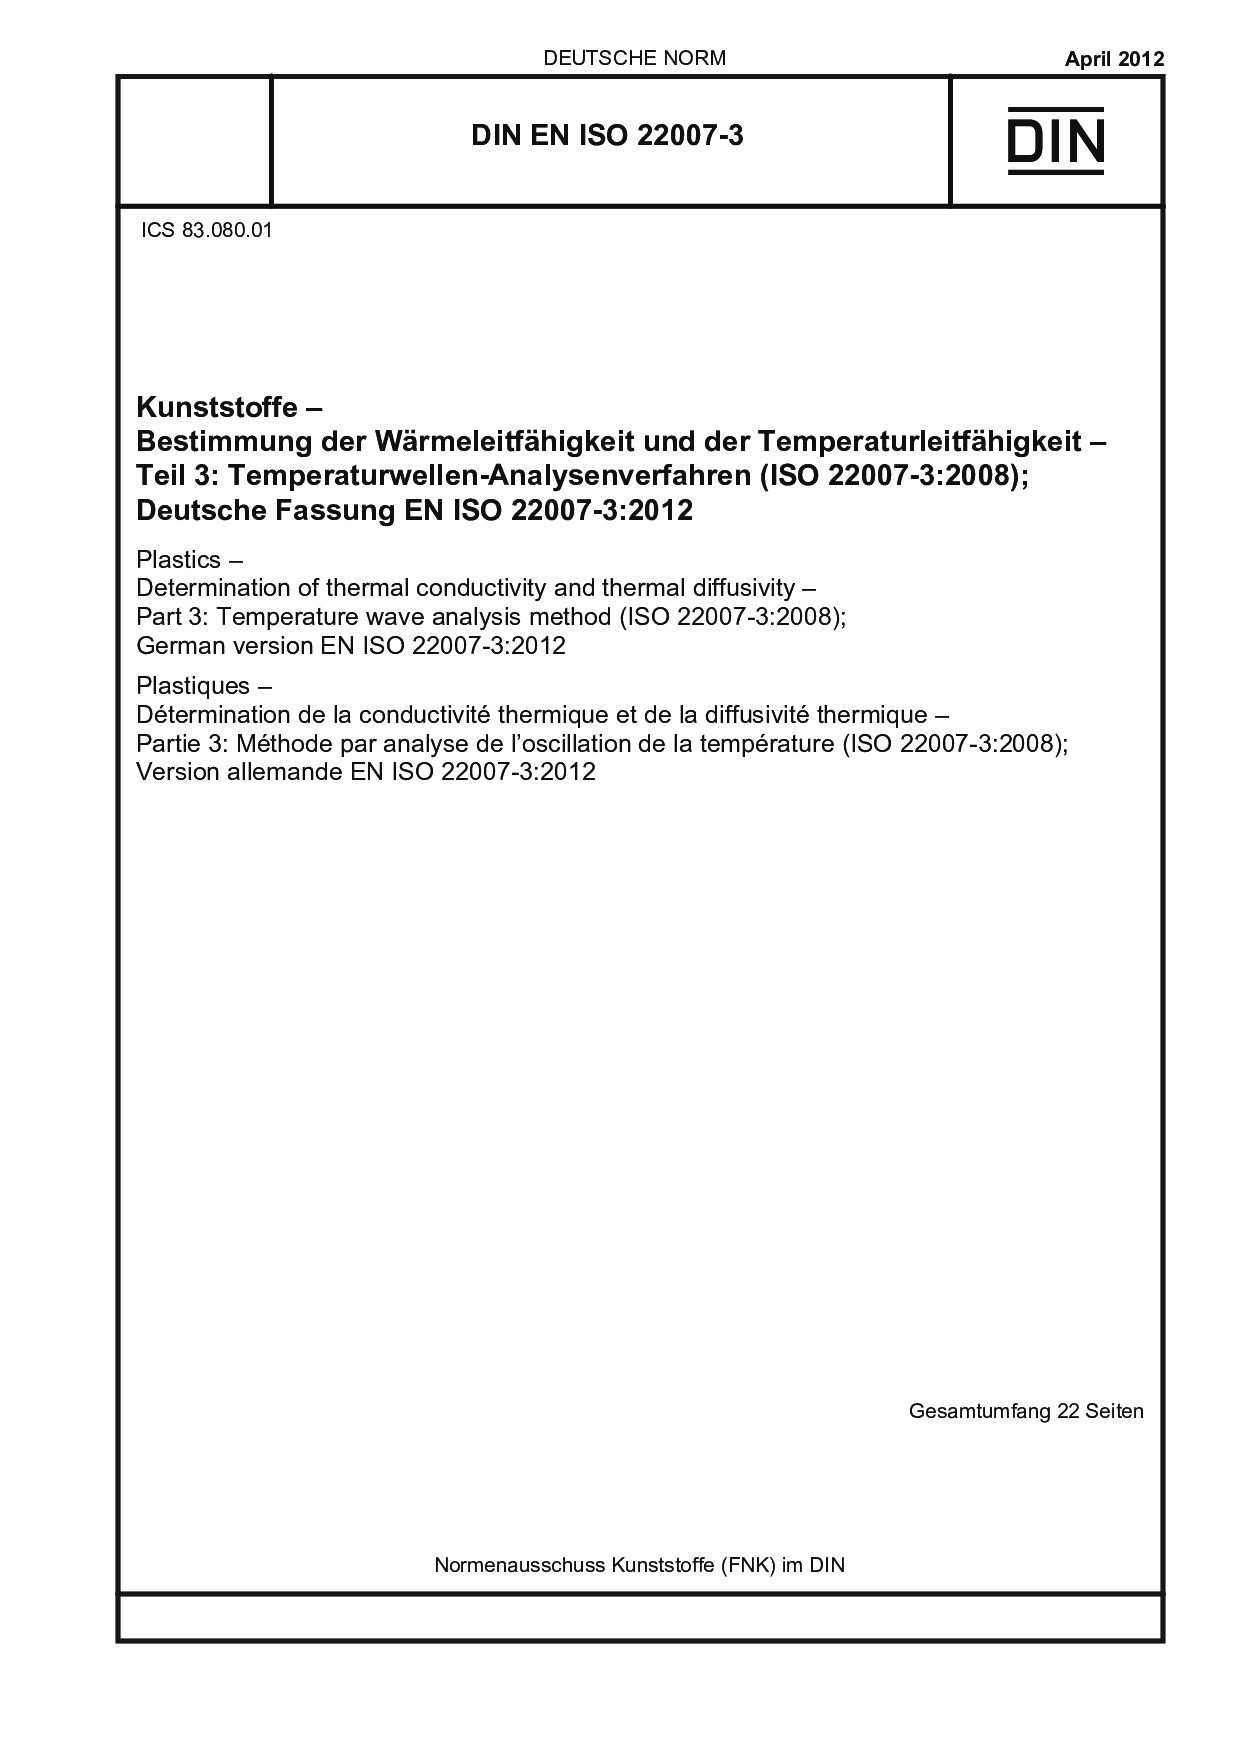 DIN EN ISO 22007-3:2012